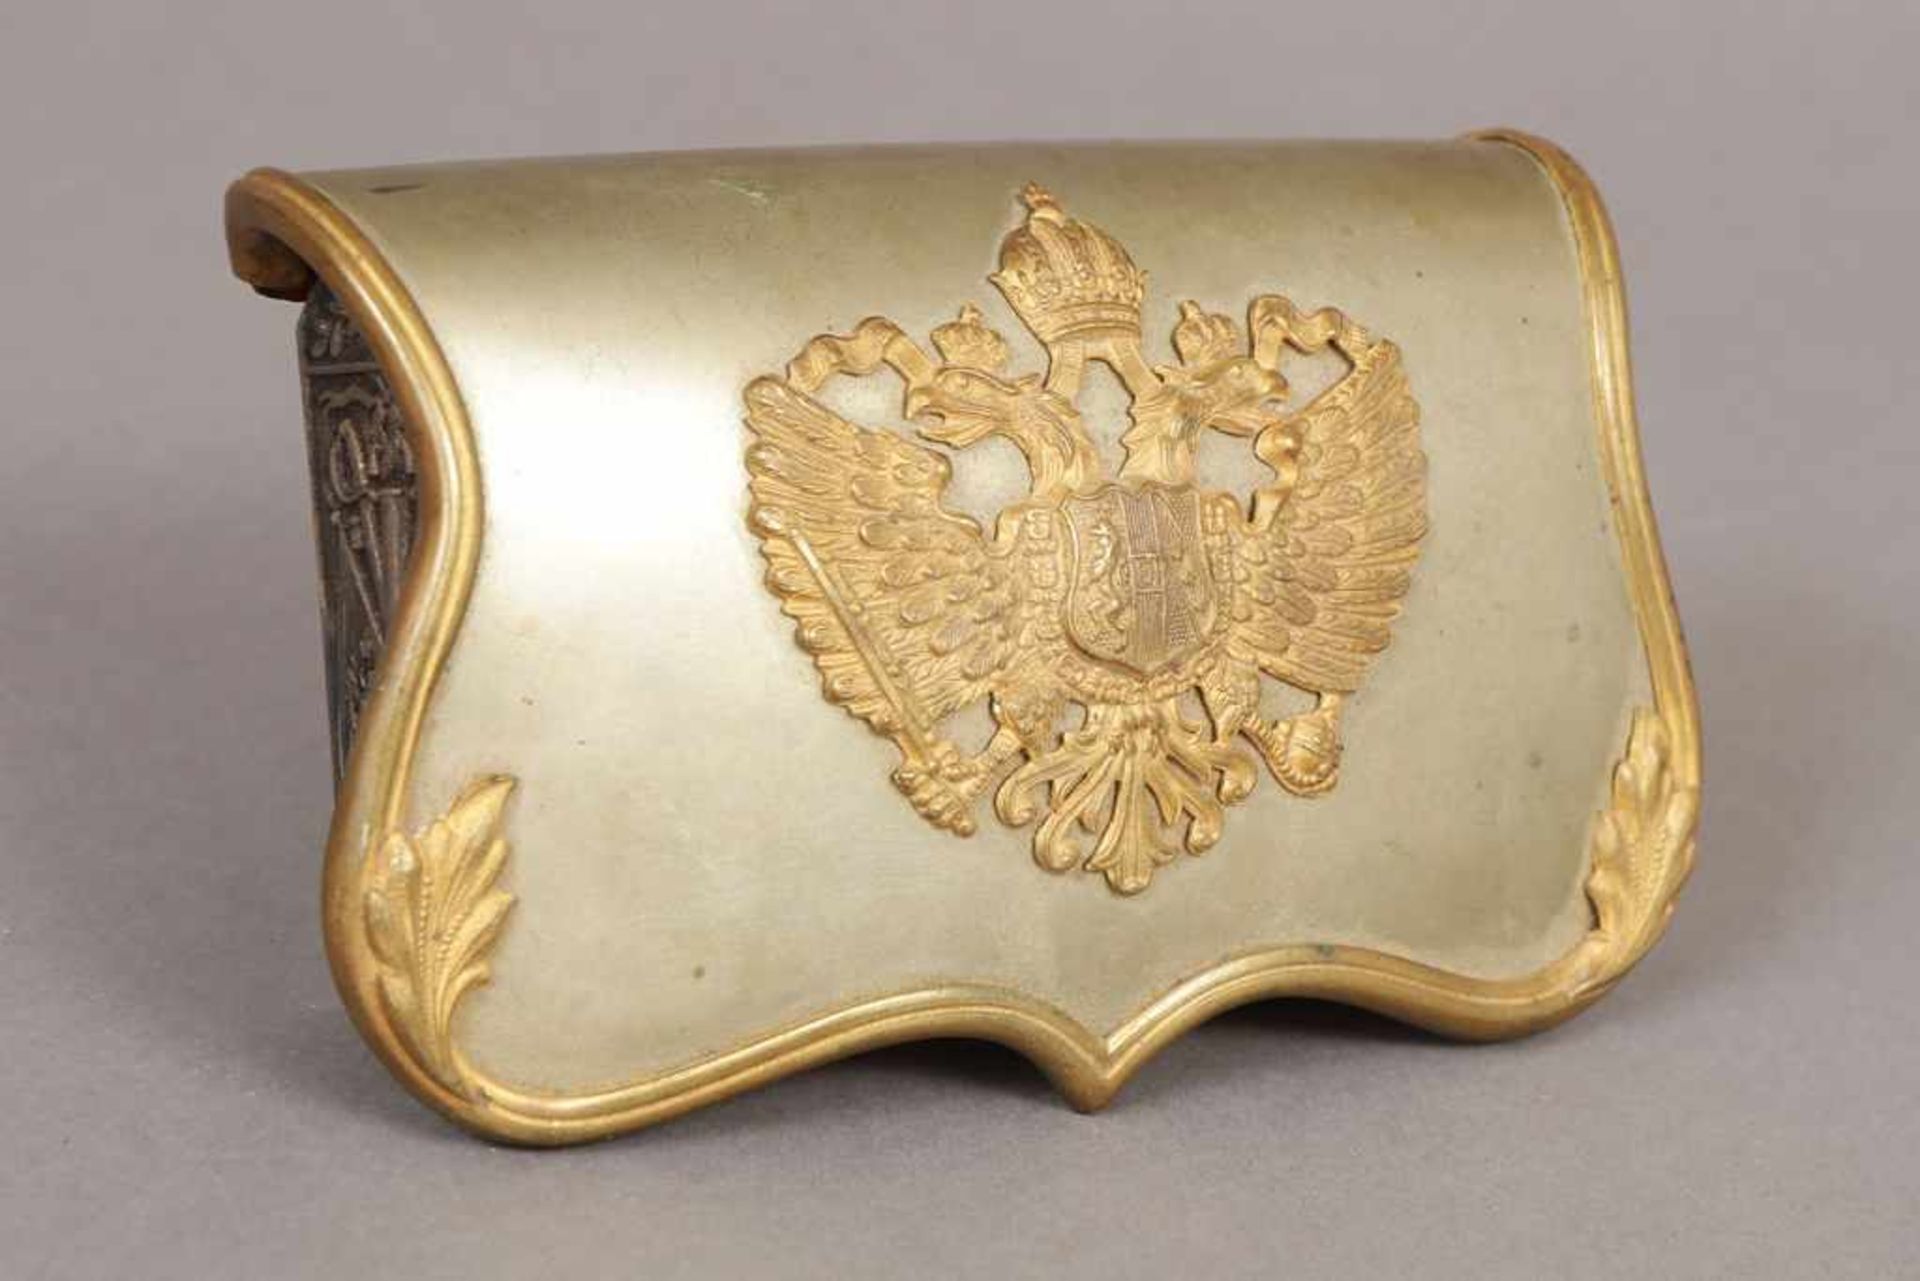 Siegel-Gürteltasche des 19. Jhdts. Messing, vergoldet, mit Doppeladler-Applike, in rot beledertem